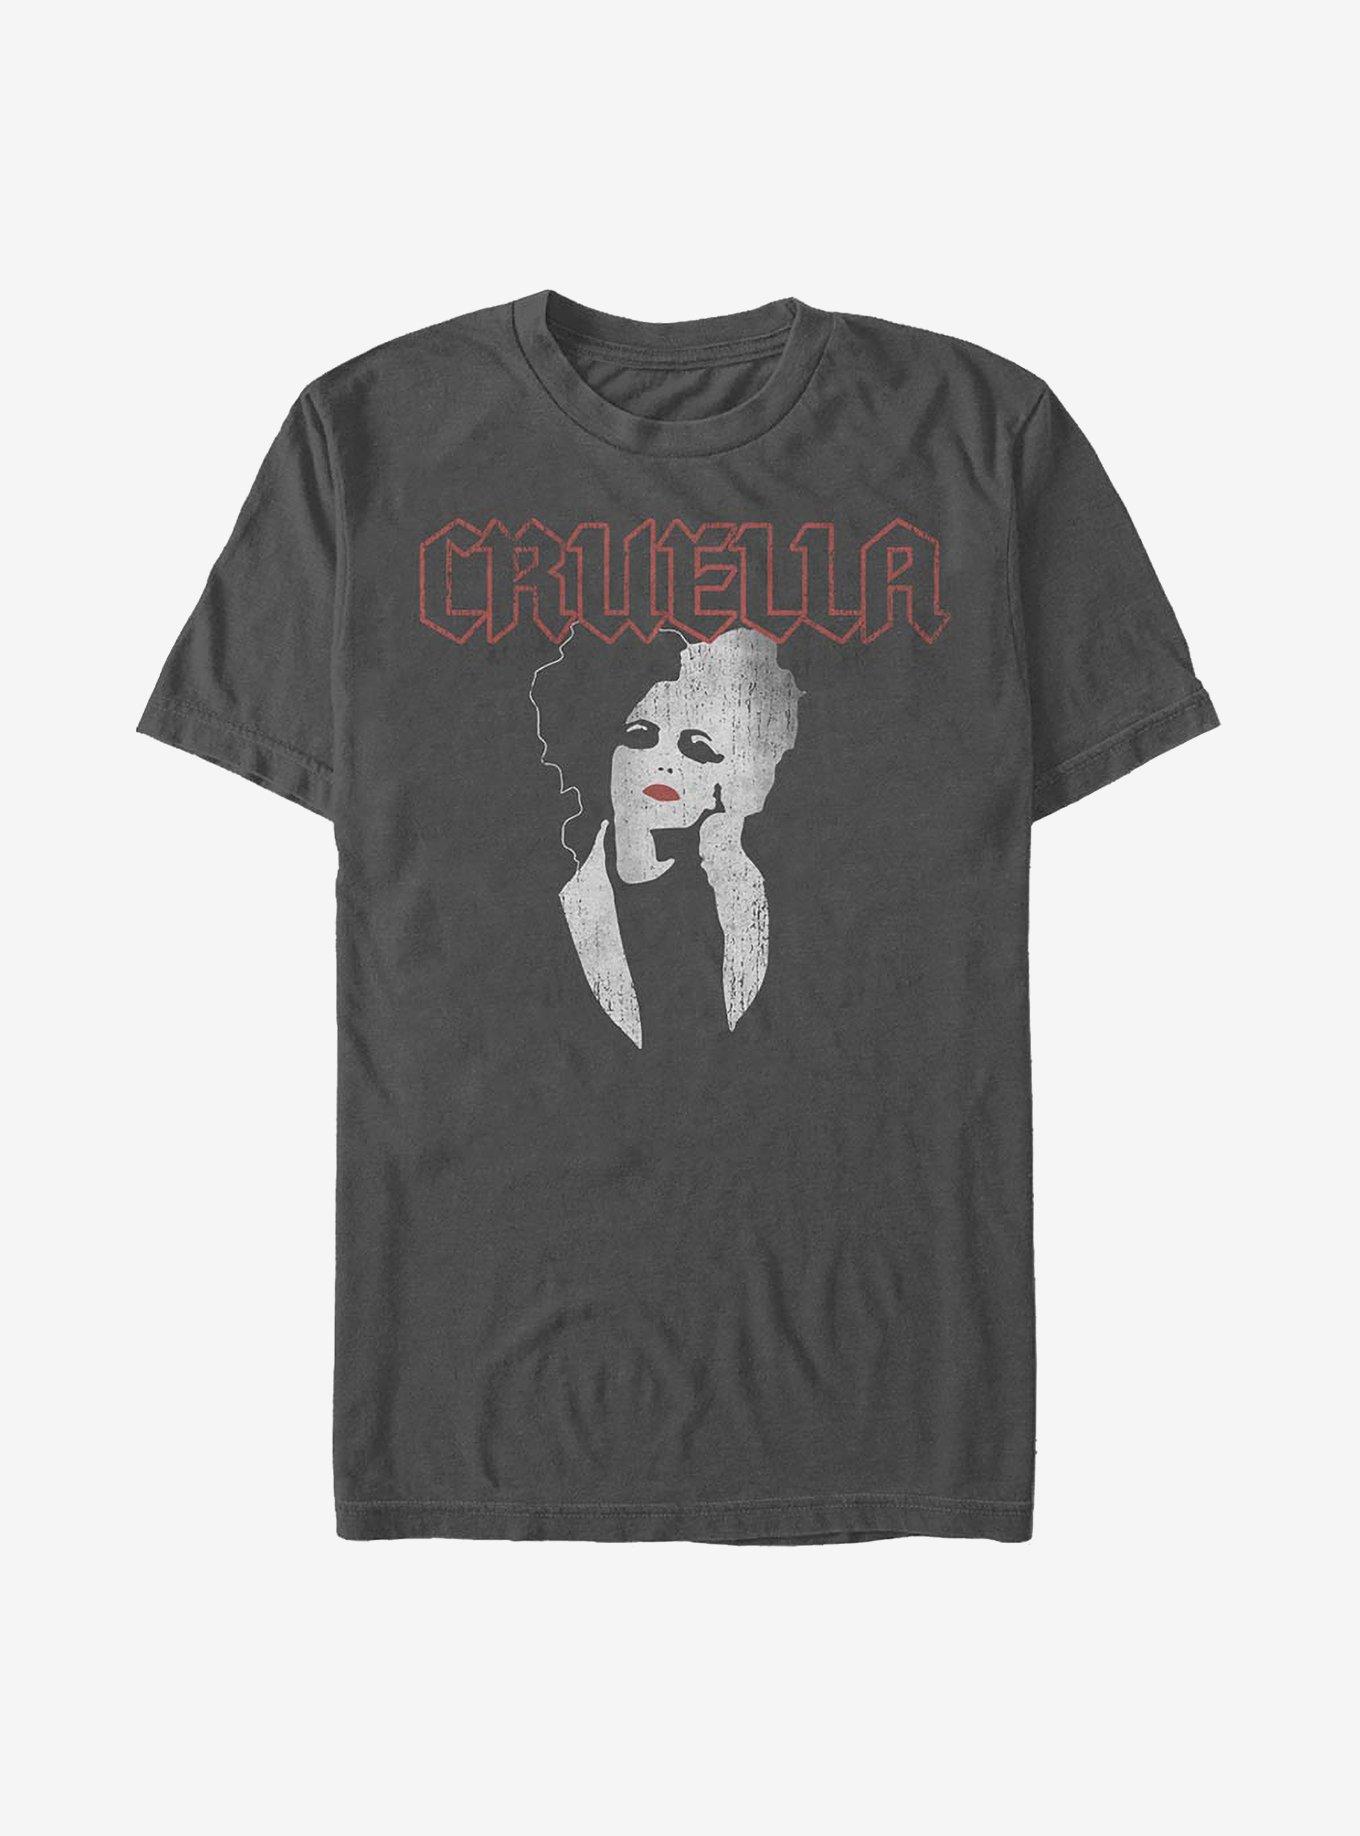 Disney Cruella Rock T-Shirt, CHARCOAL, hi-res